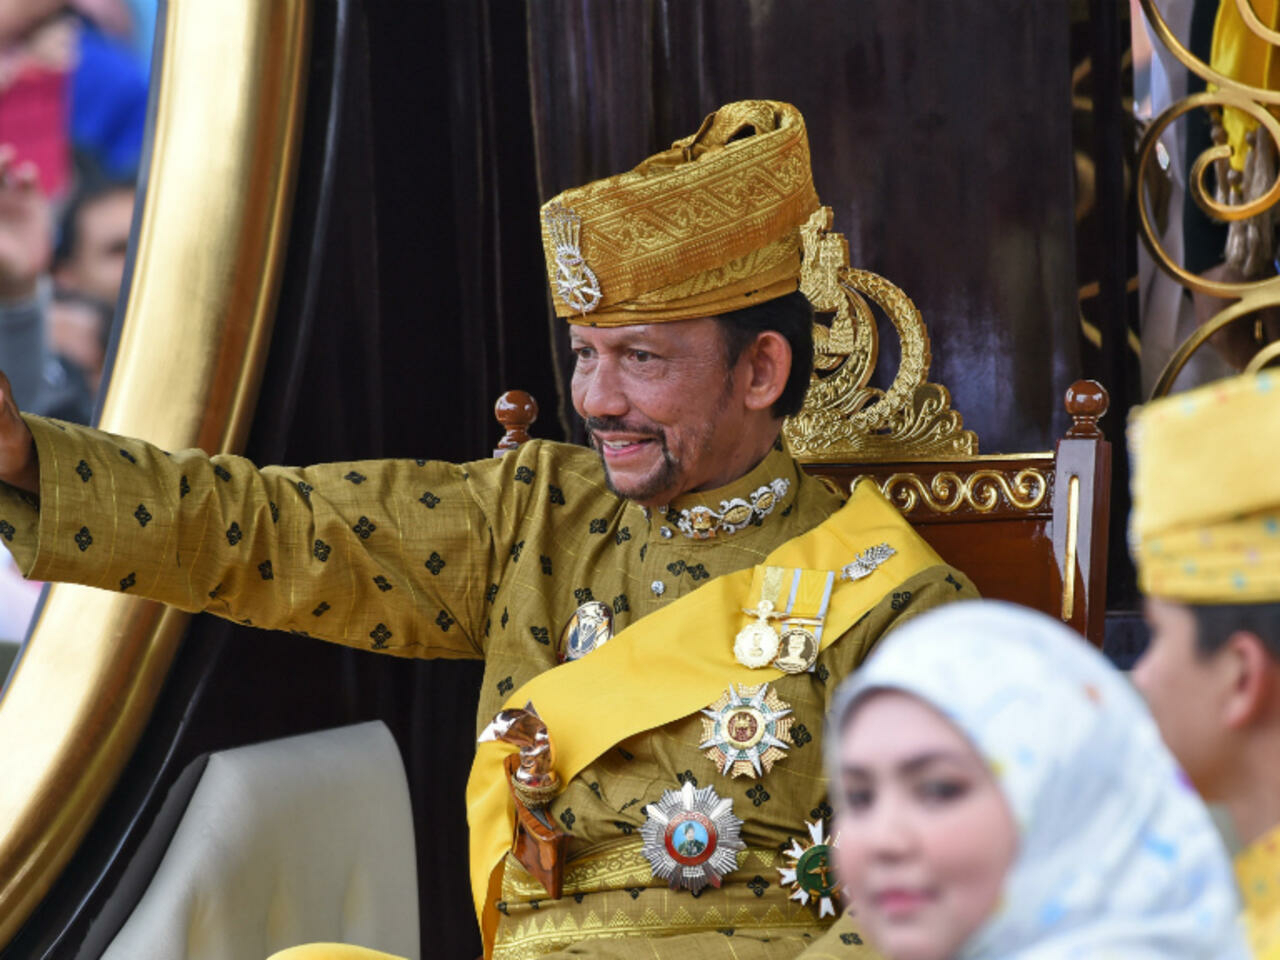 Sultan de Brunei : il possède un palais de 1.788 pièces et 7.000 voitures de luxe